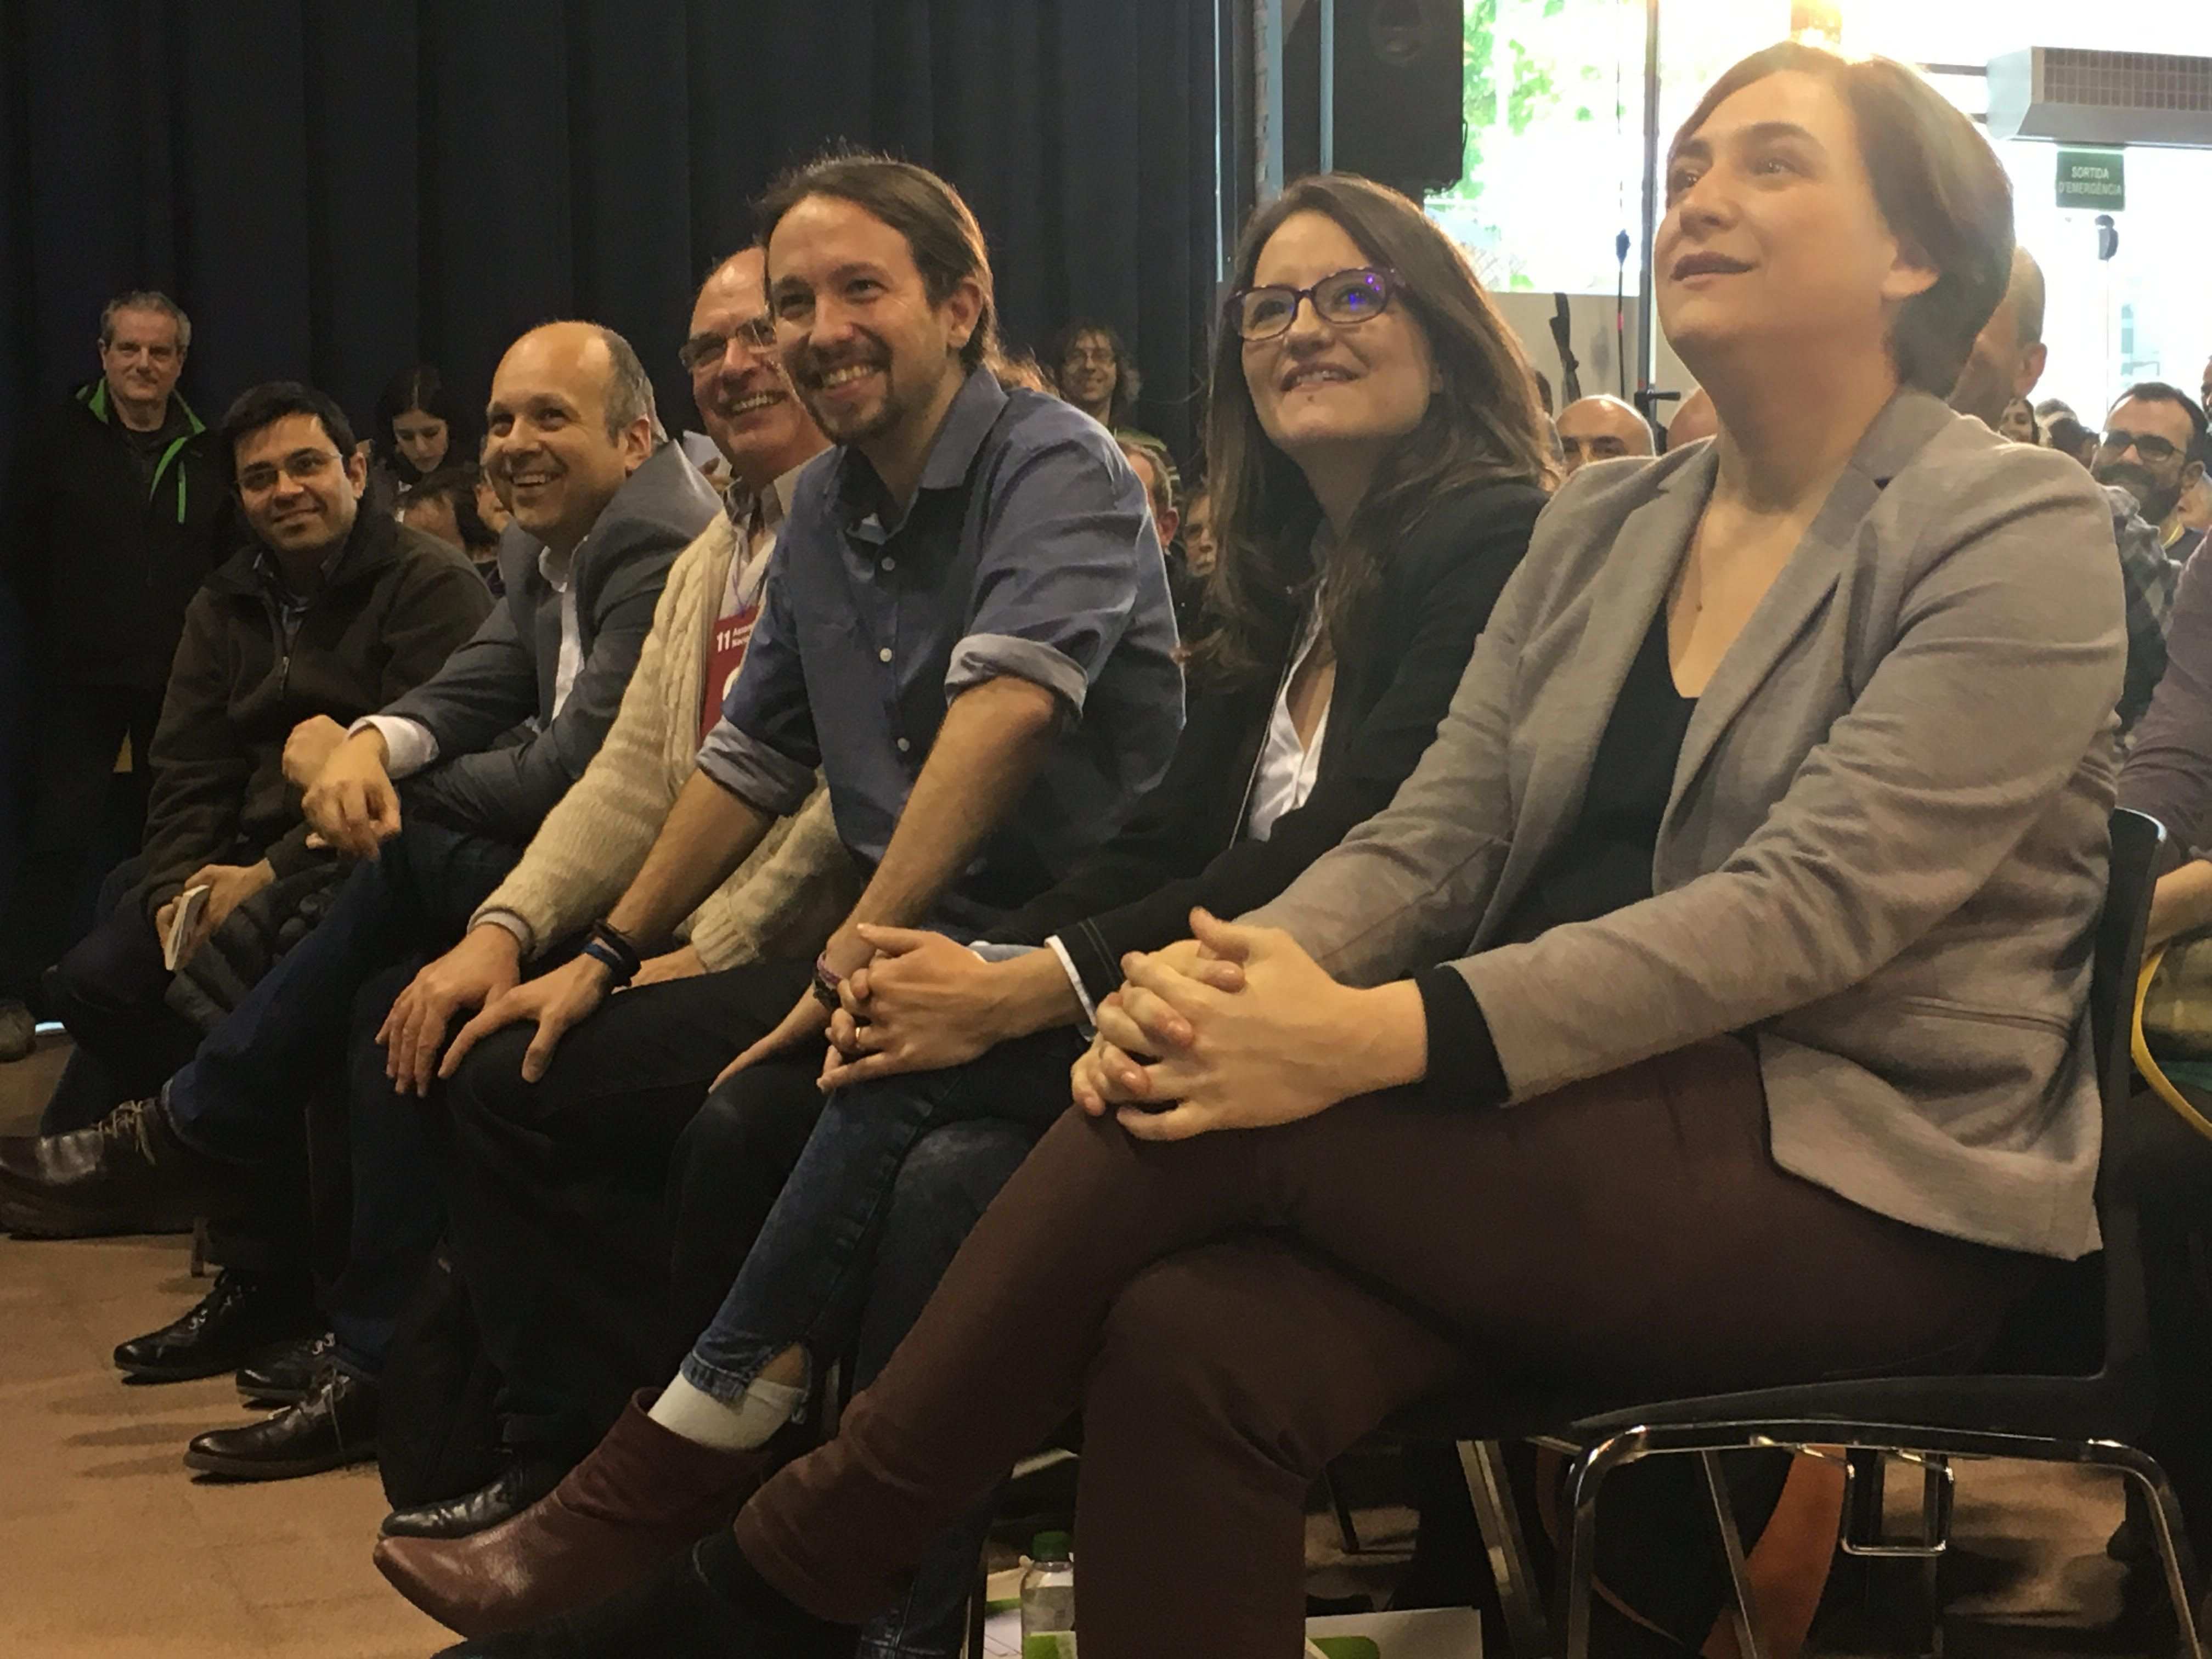 Podemos y confluencias, unidos para construir un nuevo espacio en Catalunya